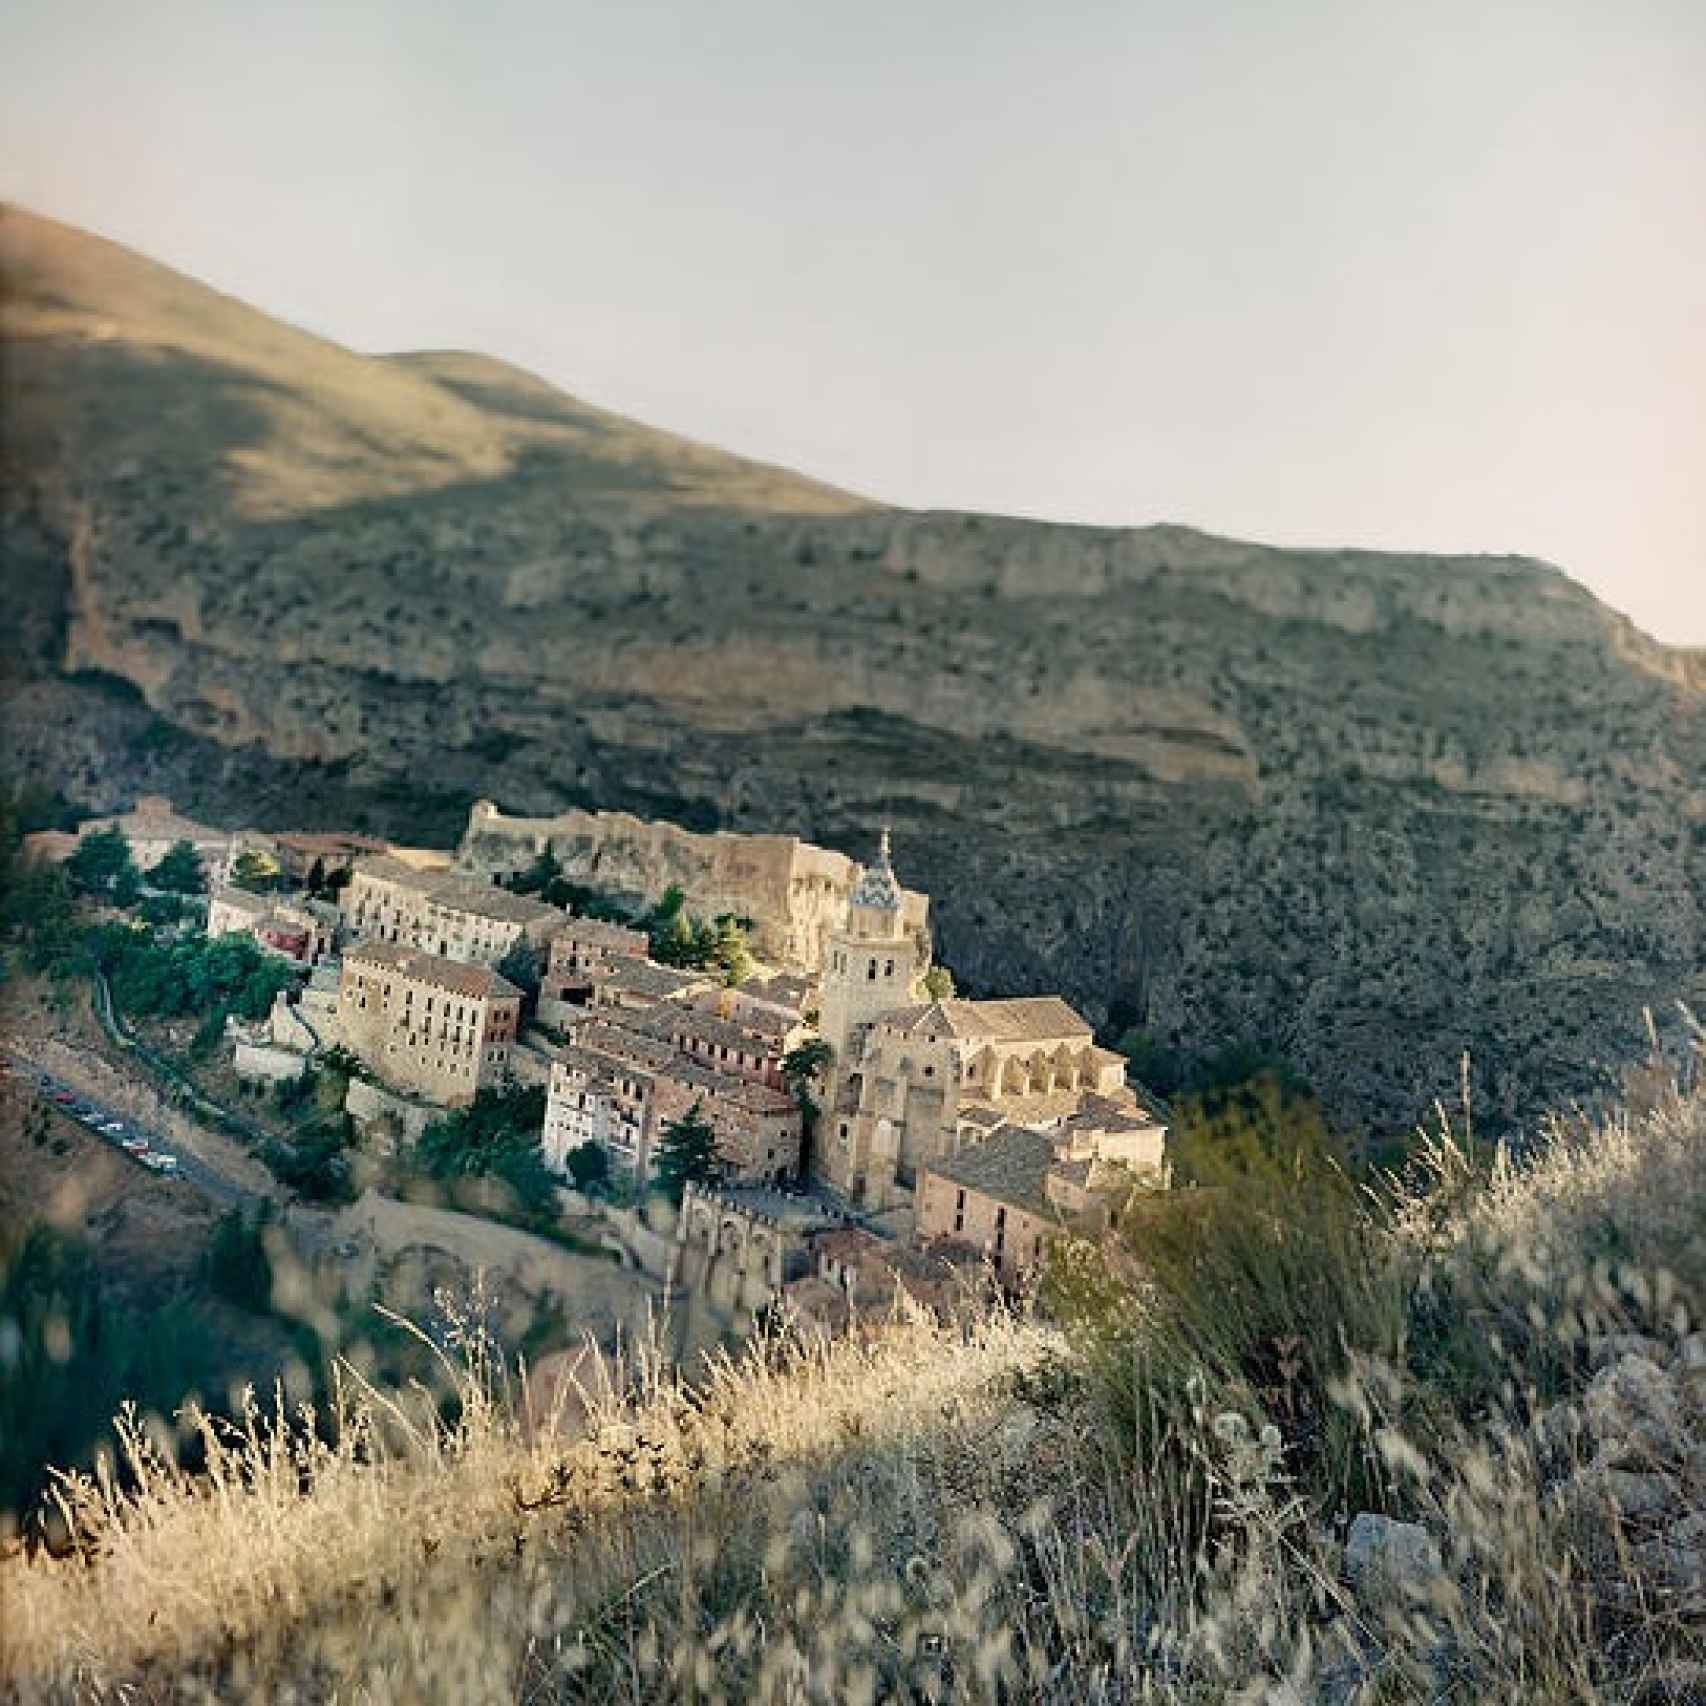 Una de las visiones del trabajo Albarracín.